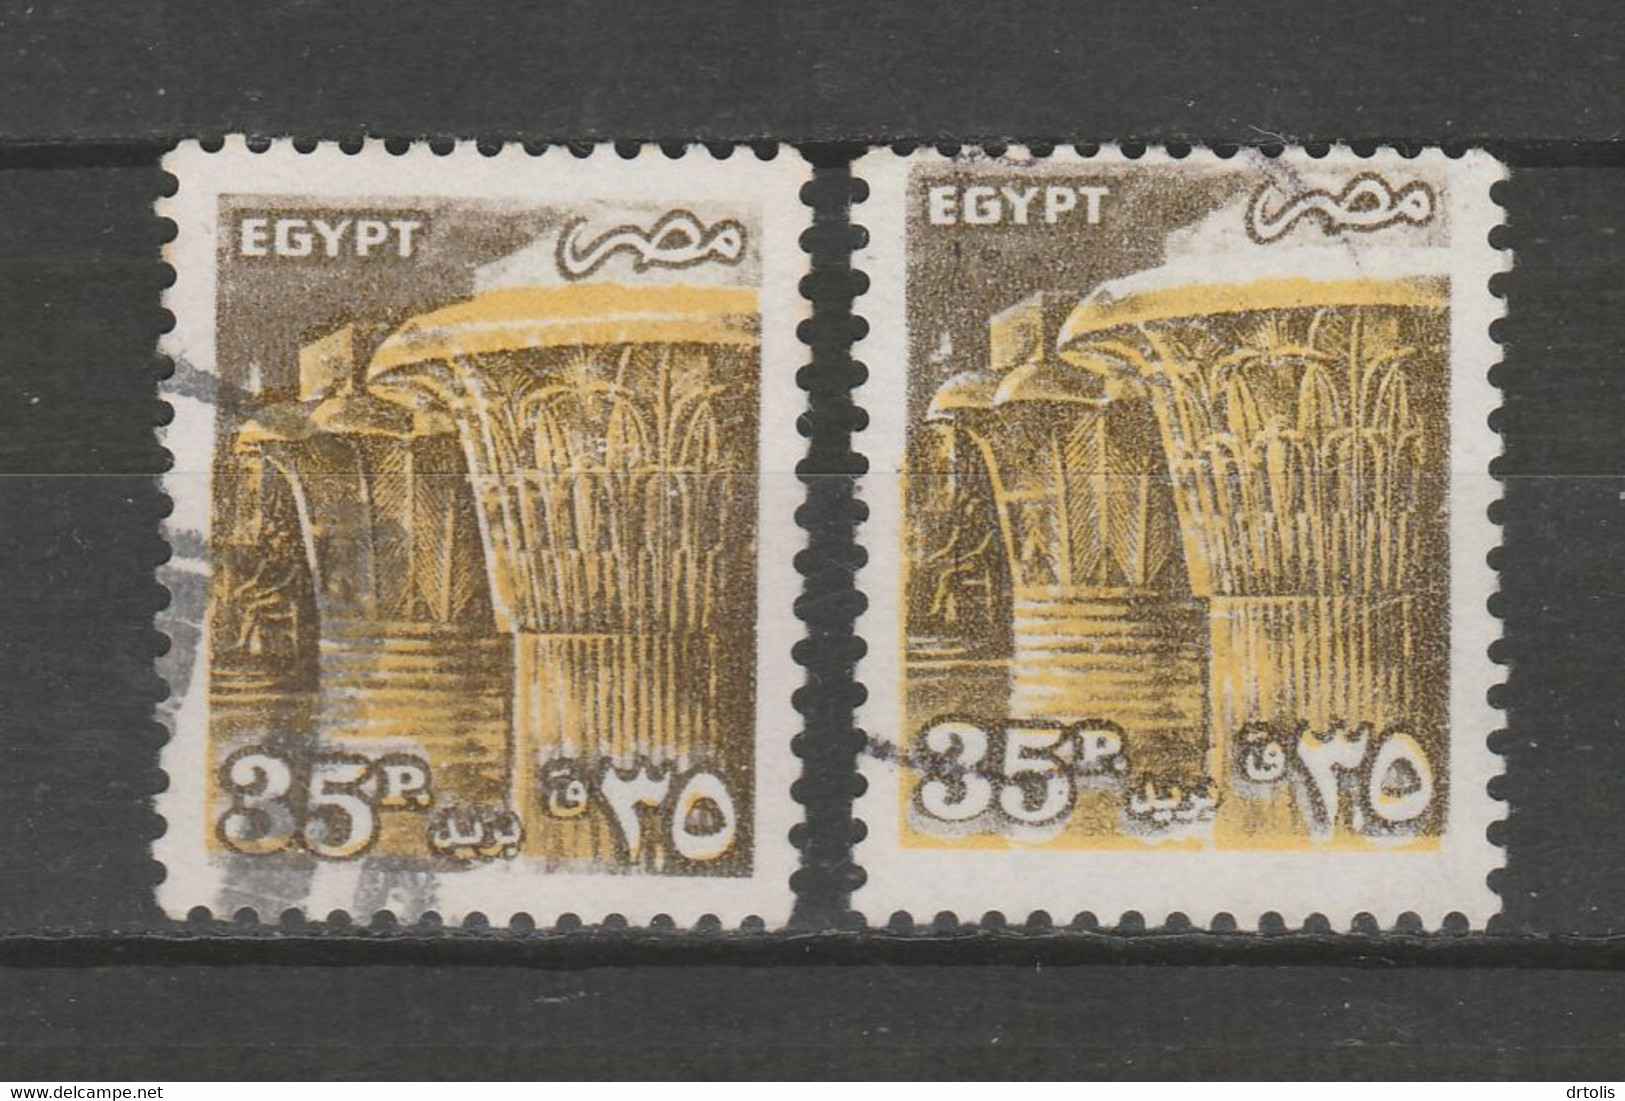 EGYPT / PERFORATION ERROR ERROR / VF USED - Usati